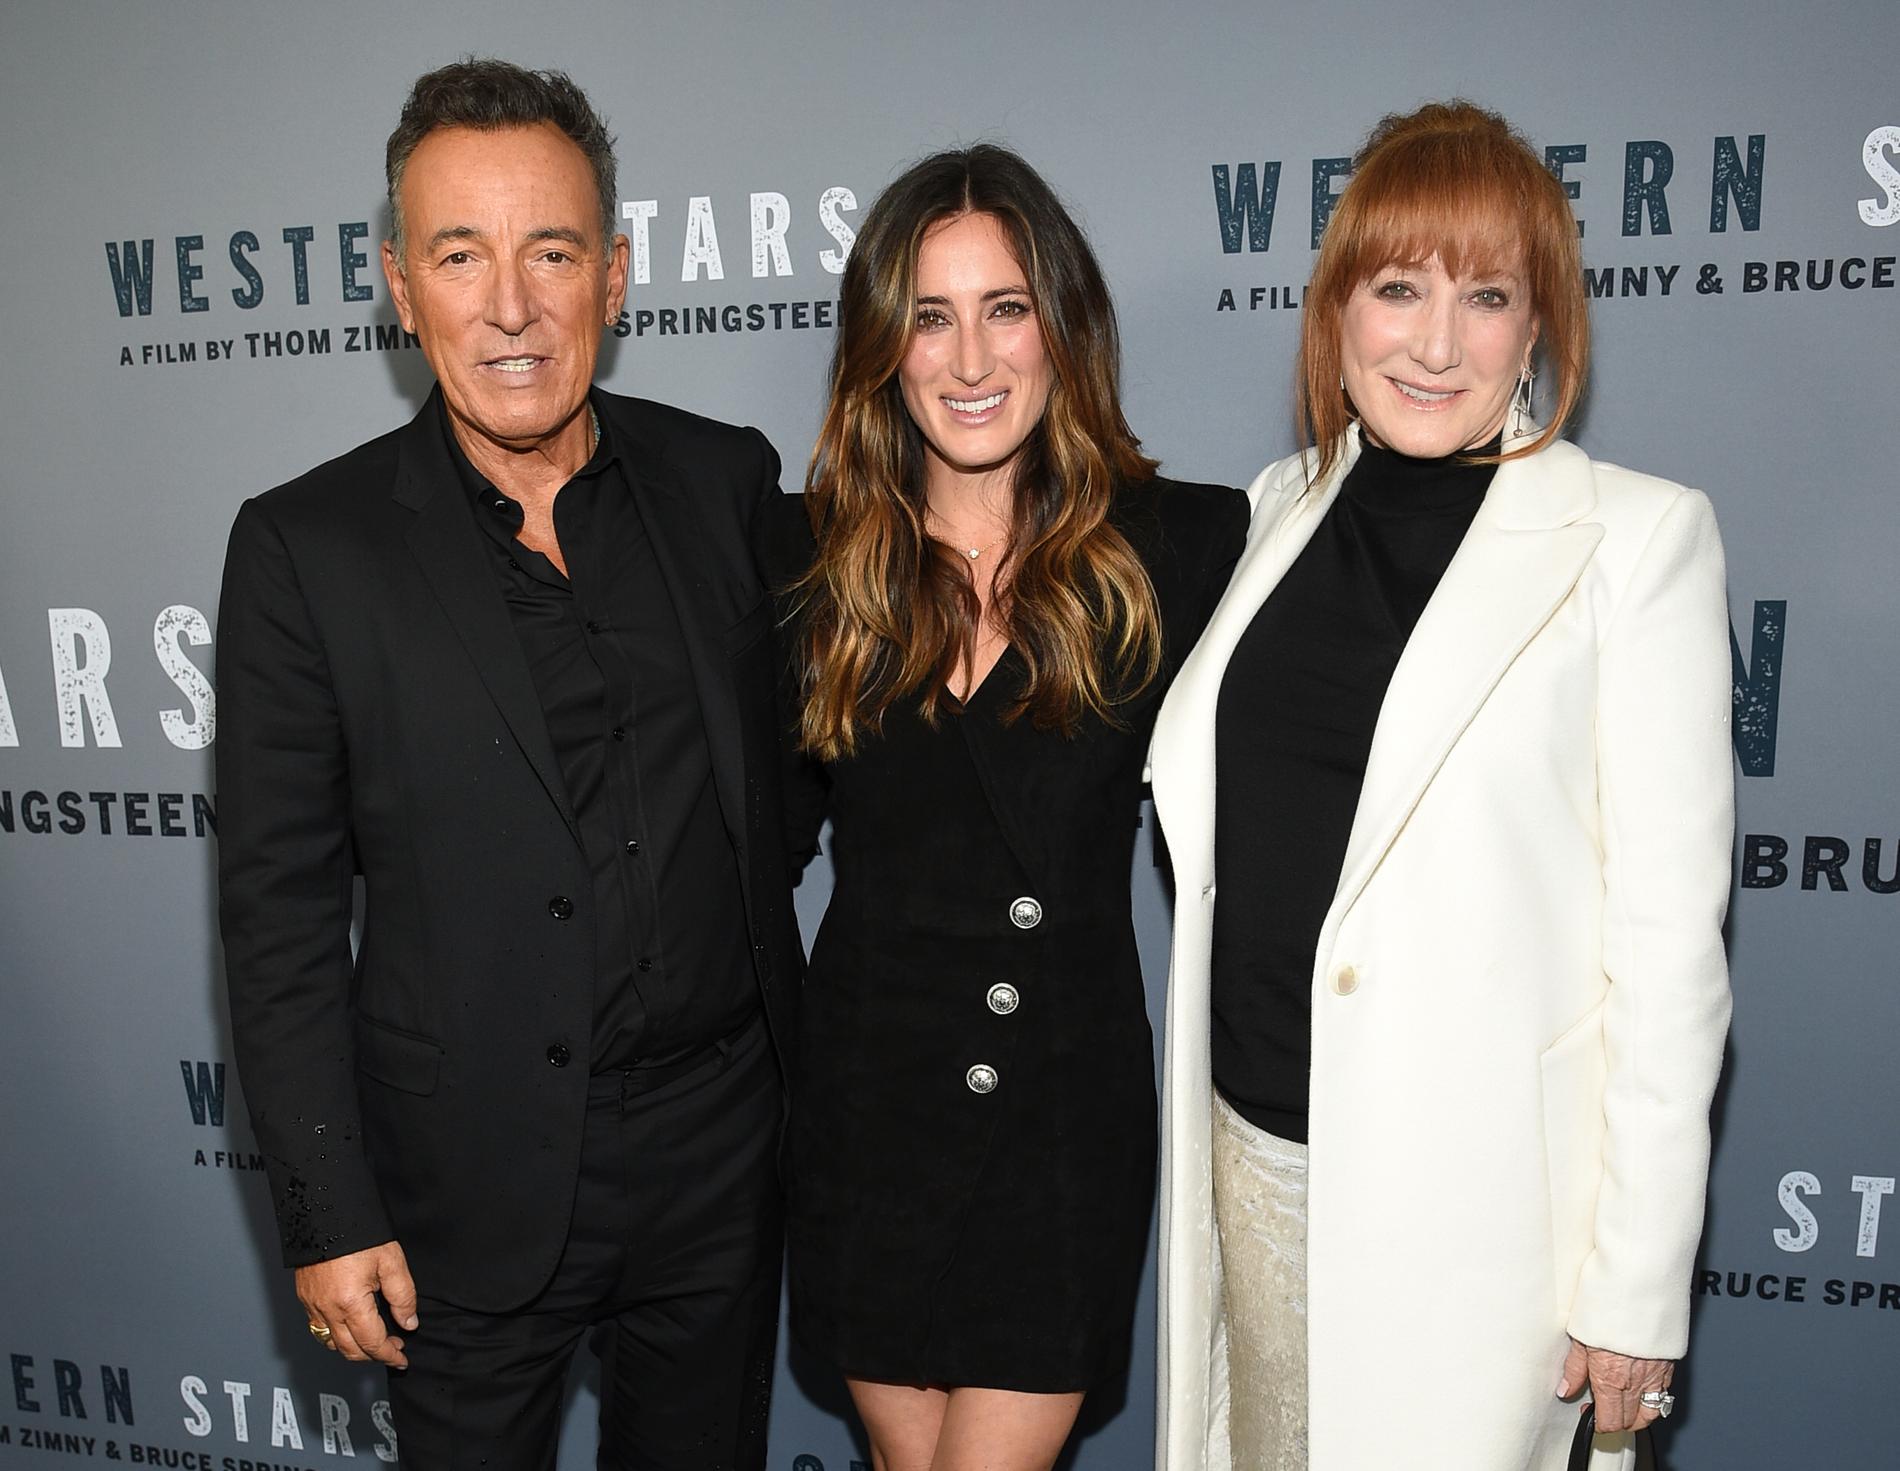 Bruce med dottern Jessica Springsteen och frun Patti Scialfa.